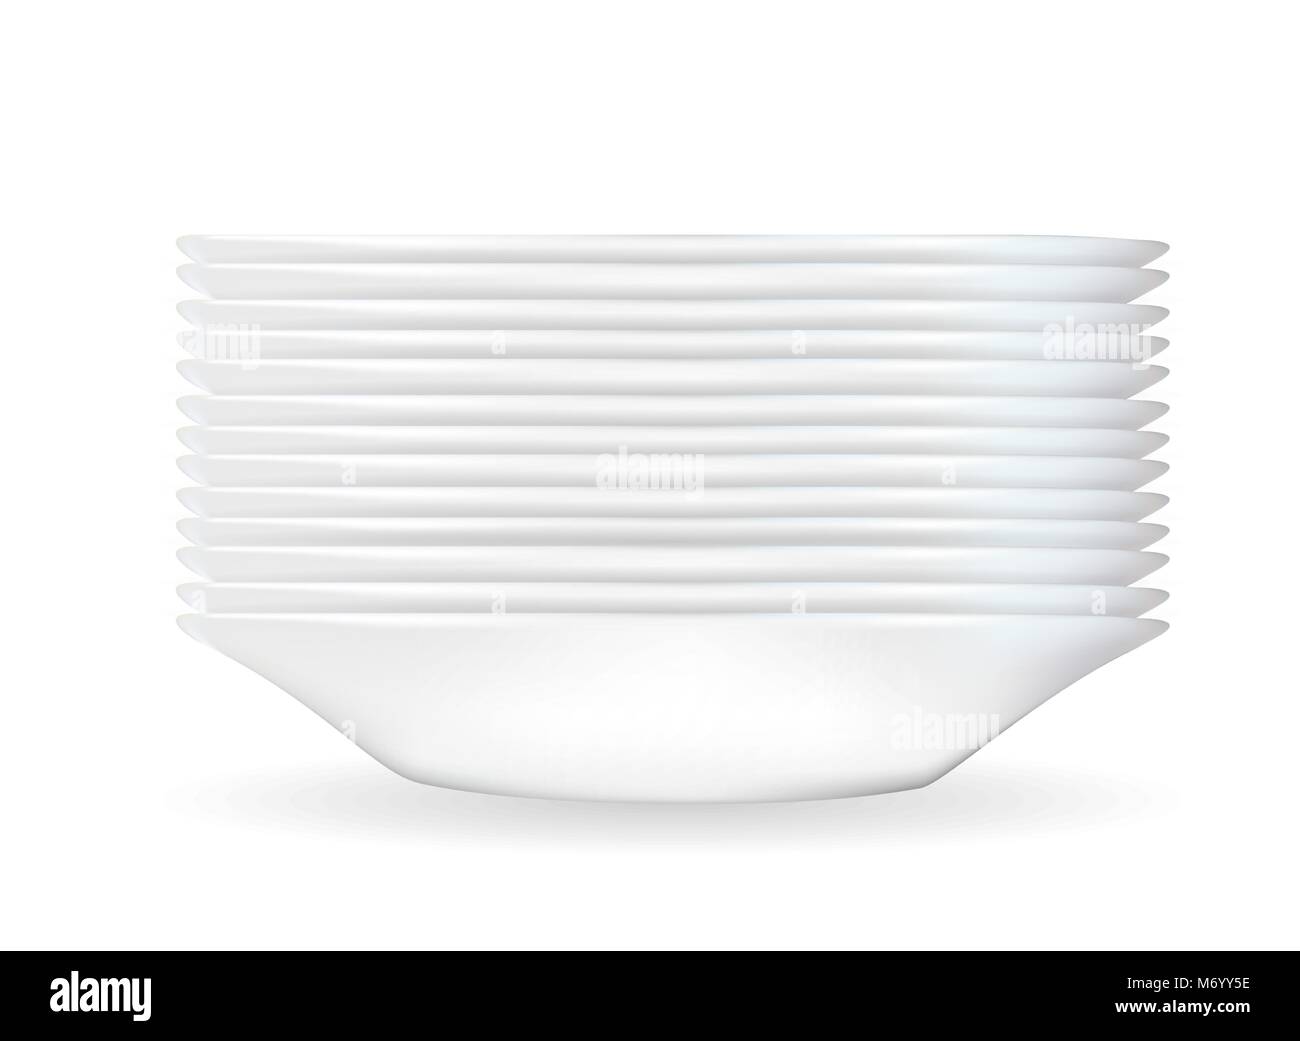 Modello tridimensionale realistico di un profondo piatto bianco. Illustrazione Vettoriale Illustrazione Vettoriale